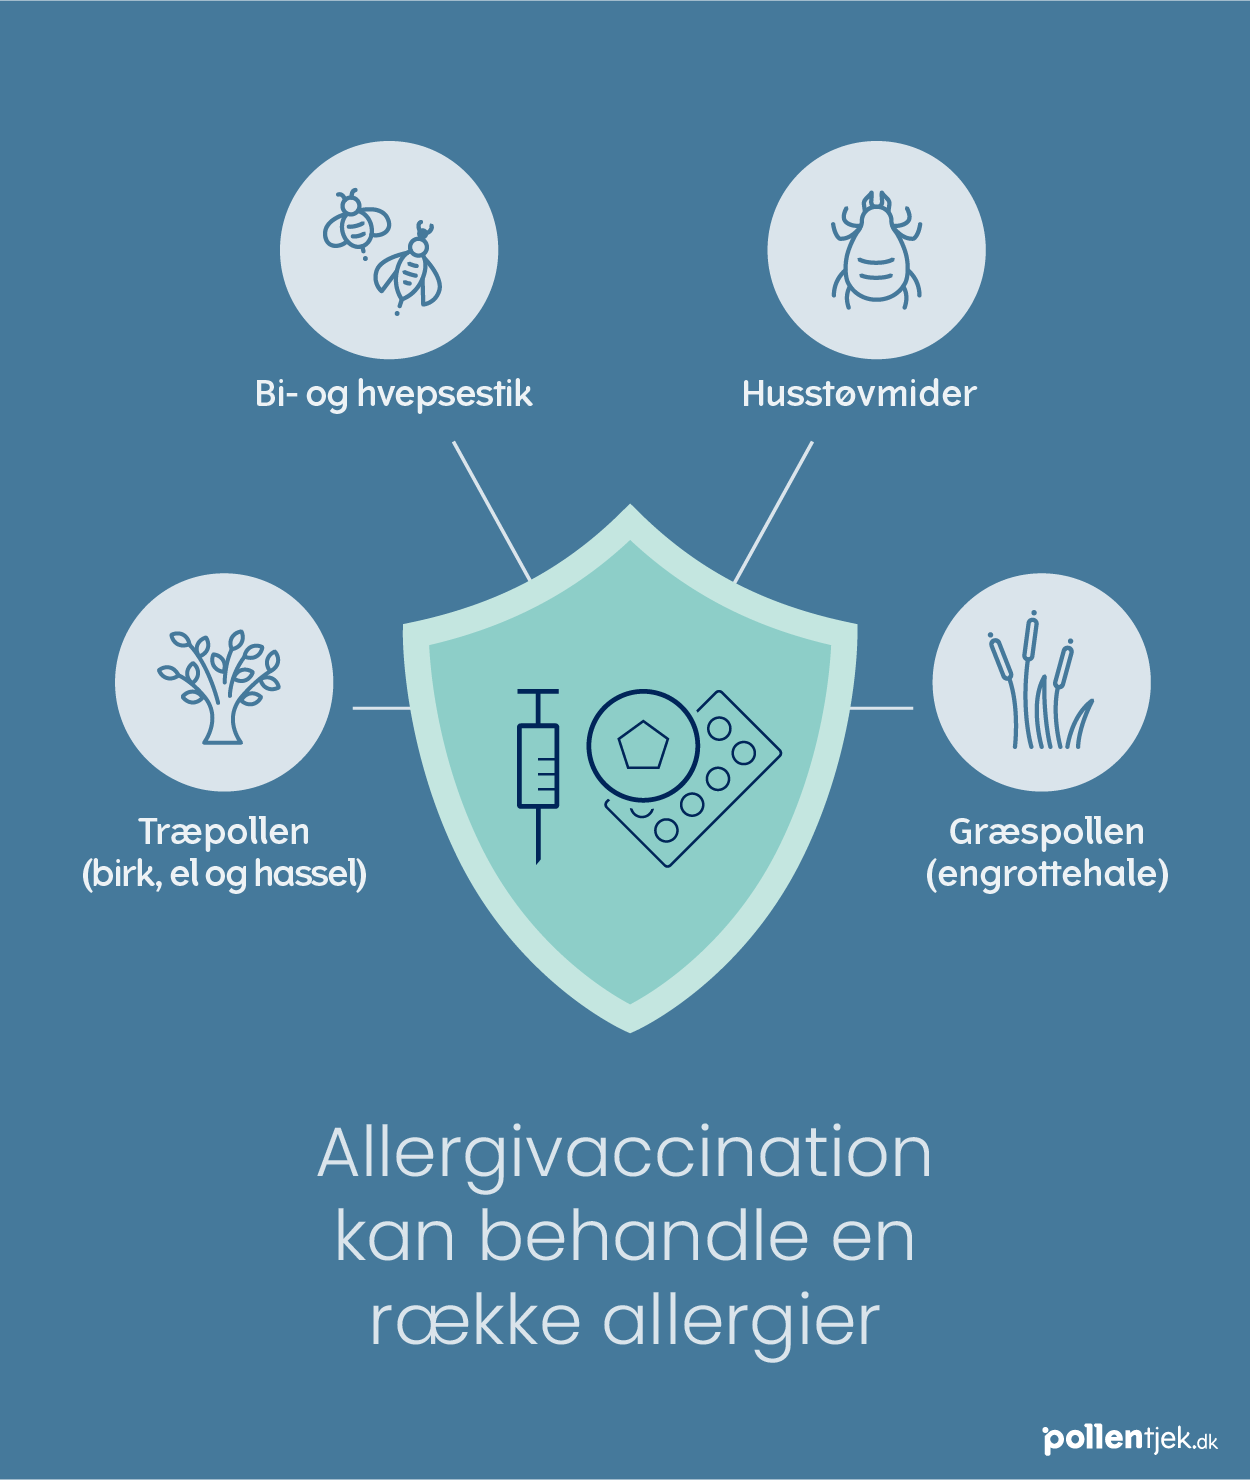 Grafik, der repræsenterer allergivaccination